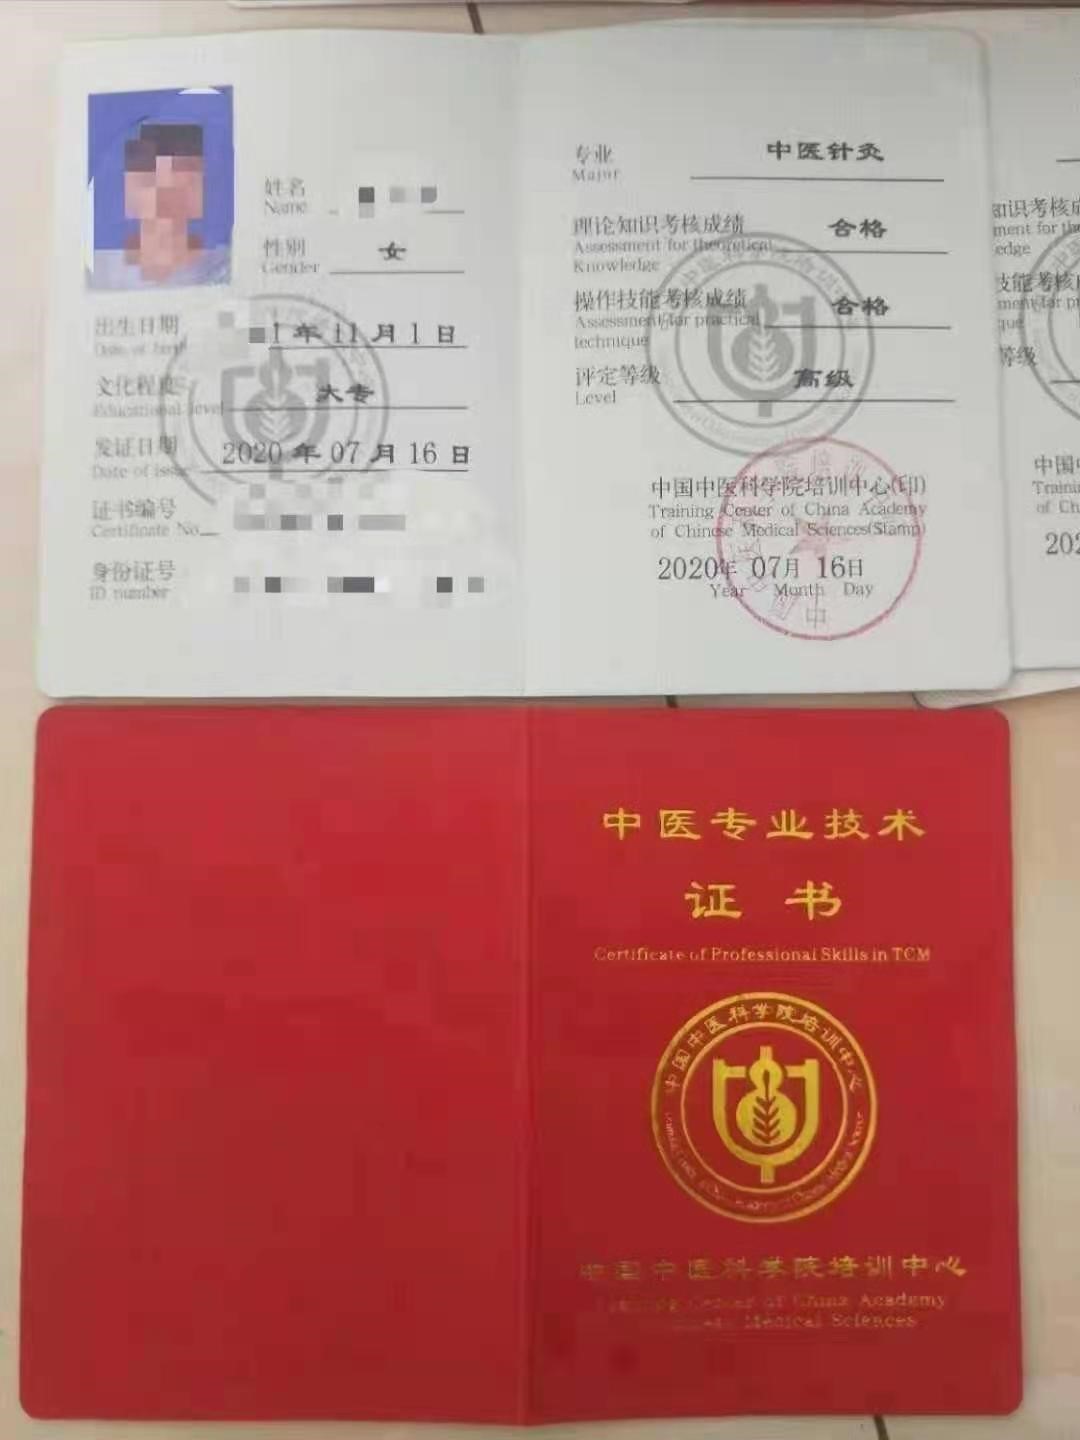 中国中医科学院培训中心 中医针灸 中医专业技术证书